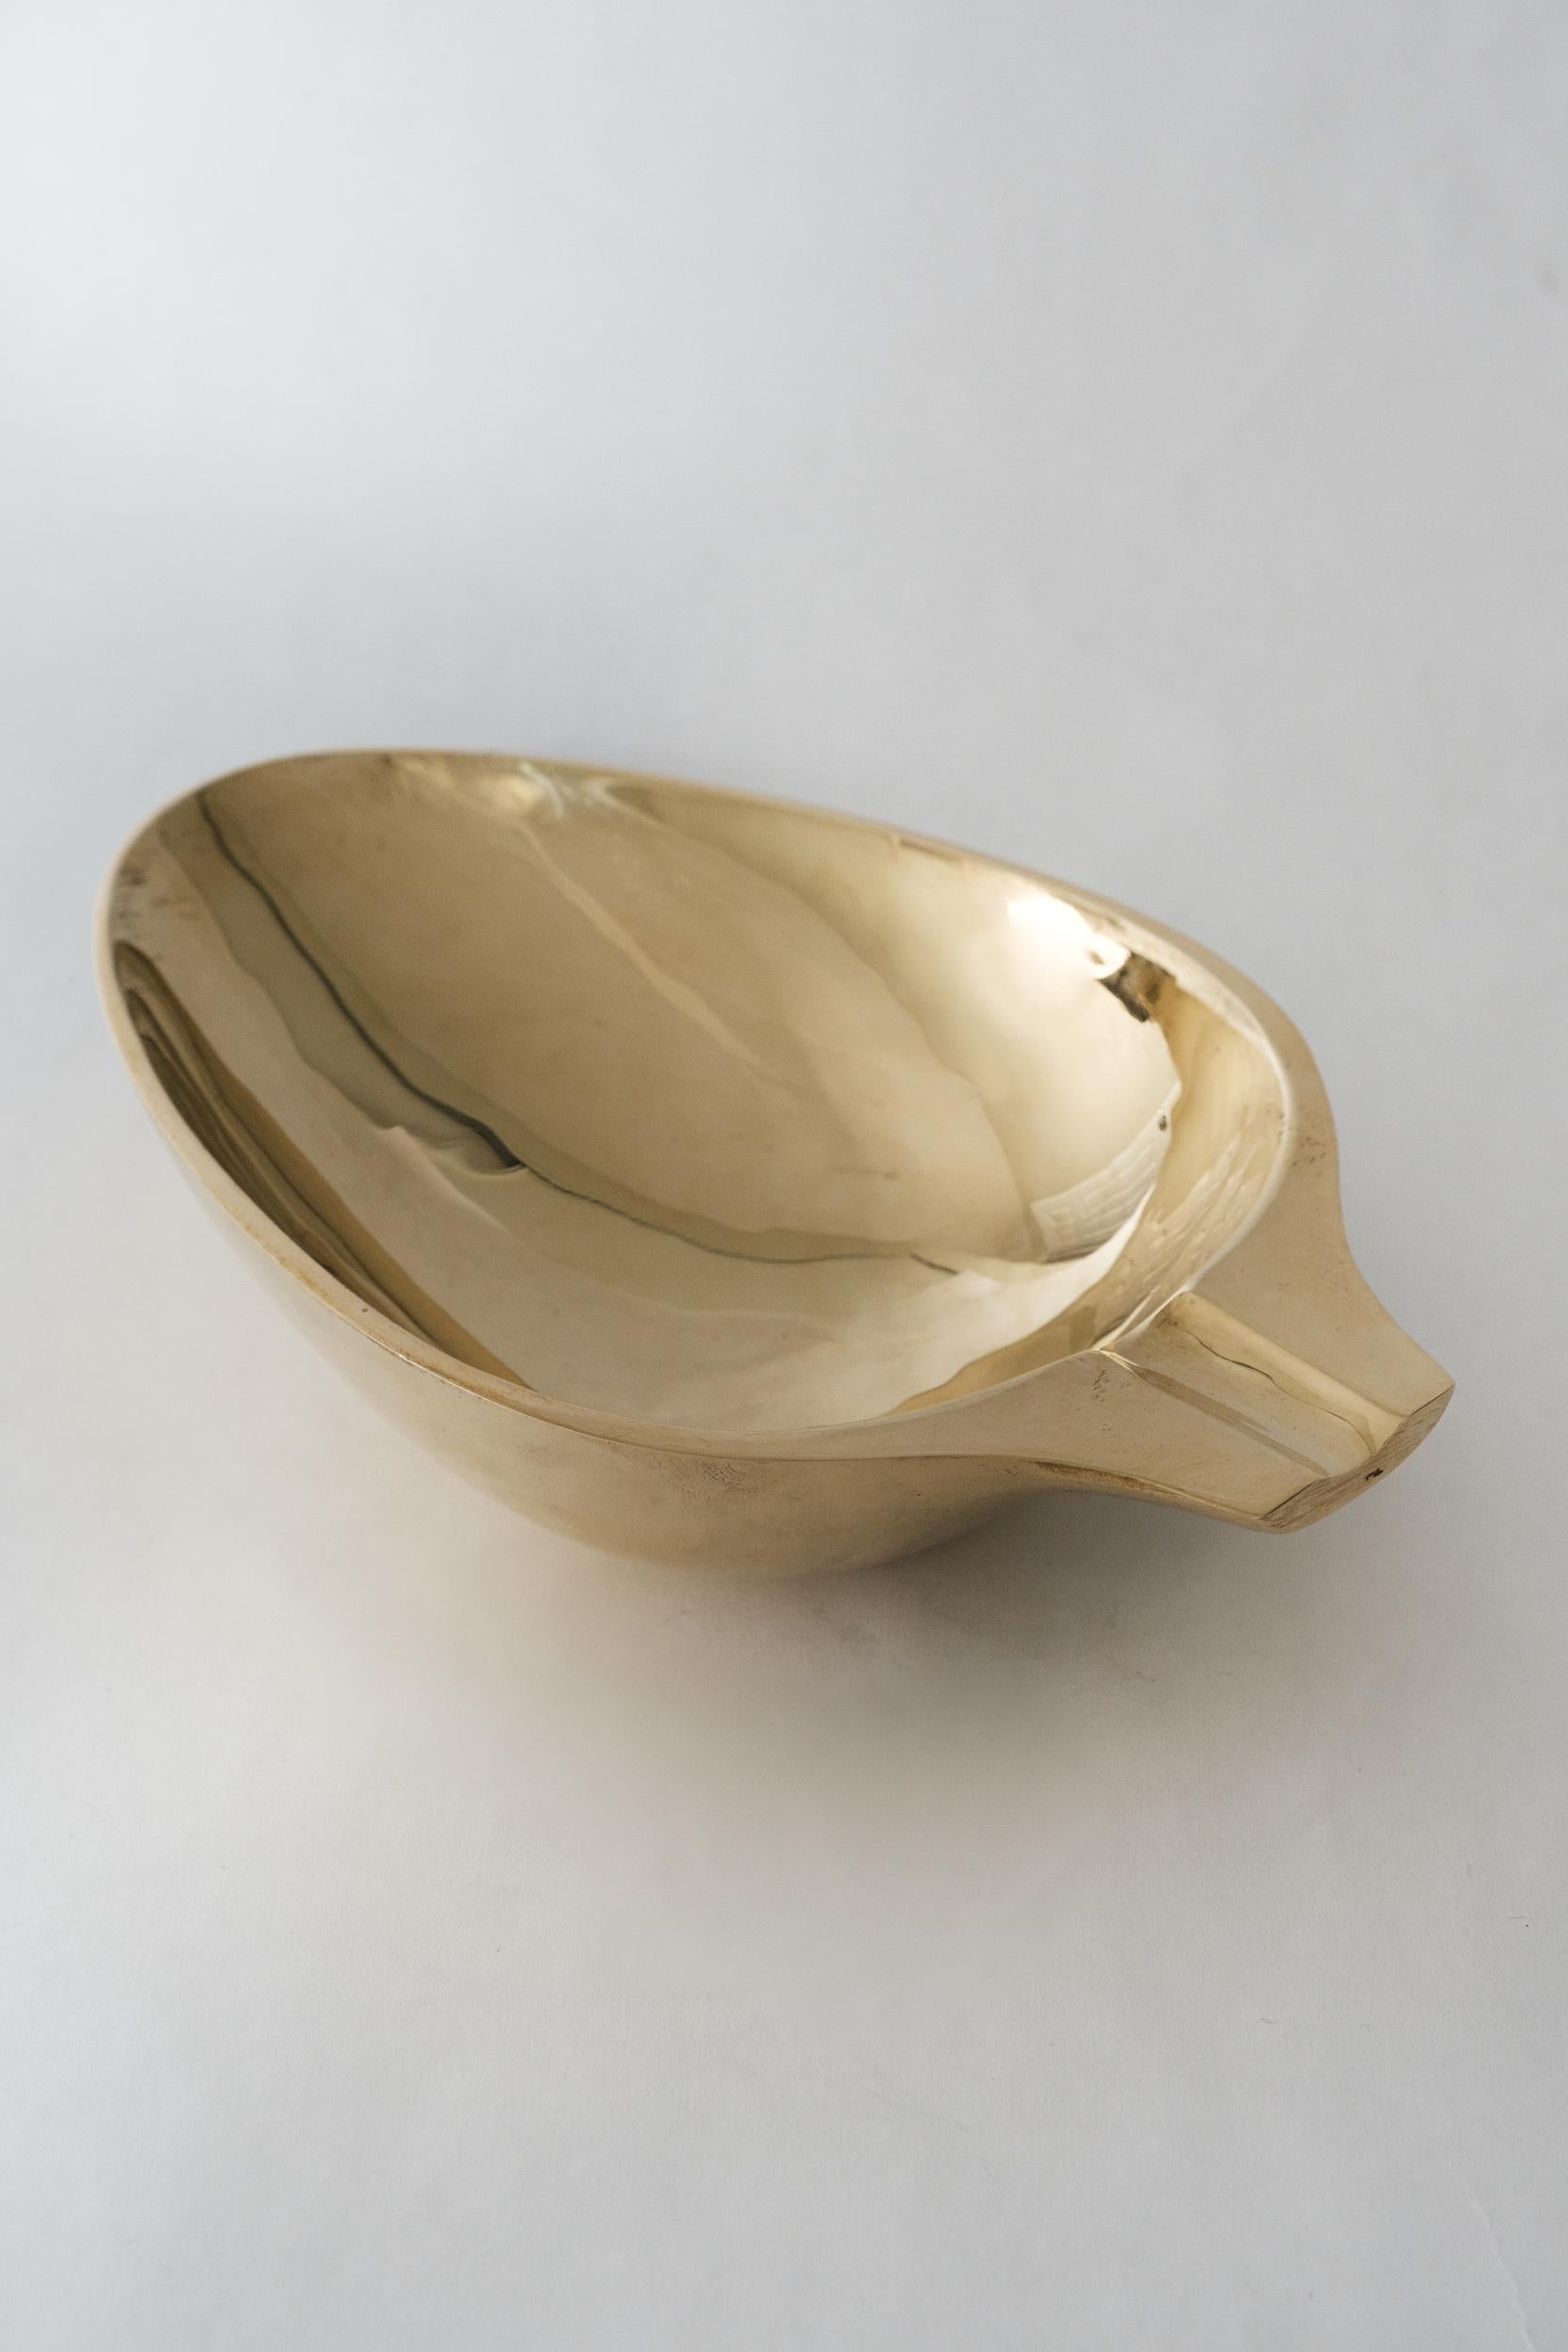 Carl Aubo¨ck Modèle #3548 bol en laiton poli. Conçue dans les années 1950, cette coupe viennoise incroyablement raffinée et sculpturale est exécutée en laiton poli. Conçu à l'origine pour servir de cendrier, ce récipient décoratif peut avoir